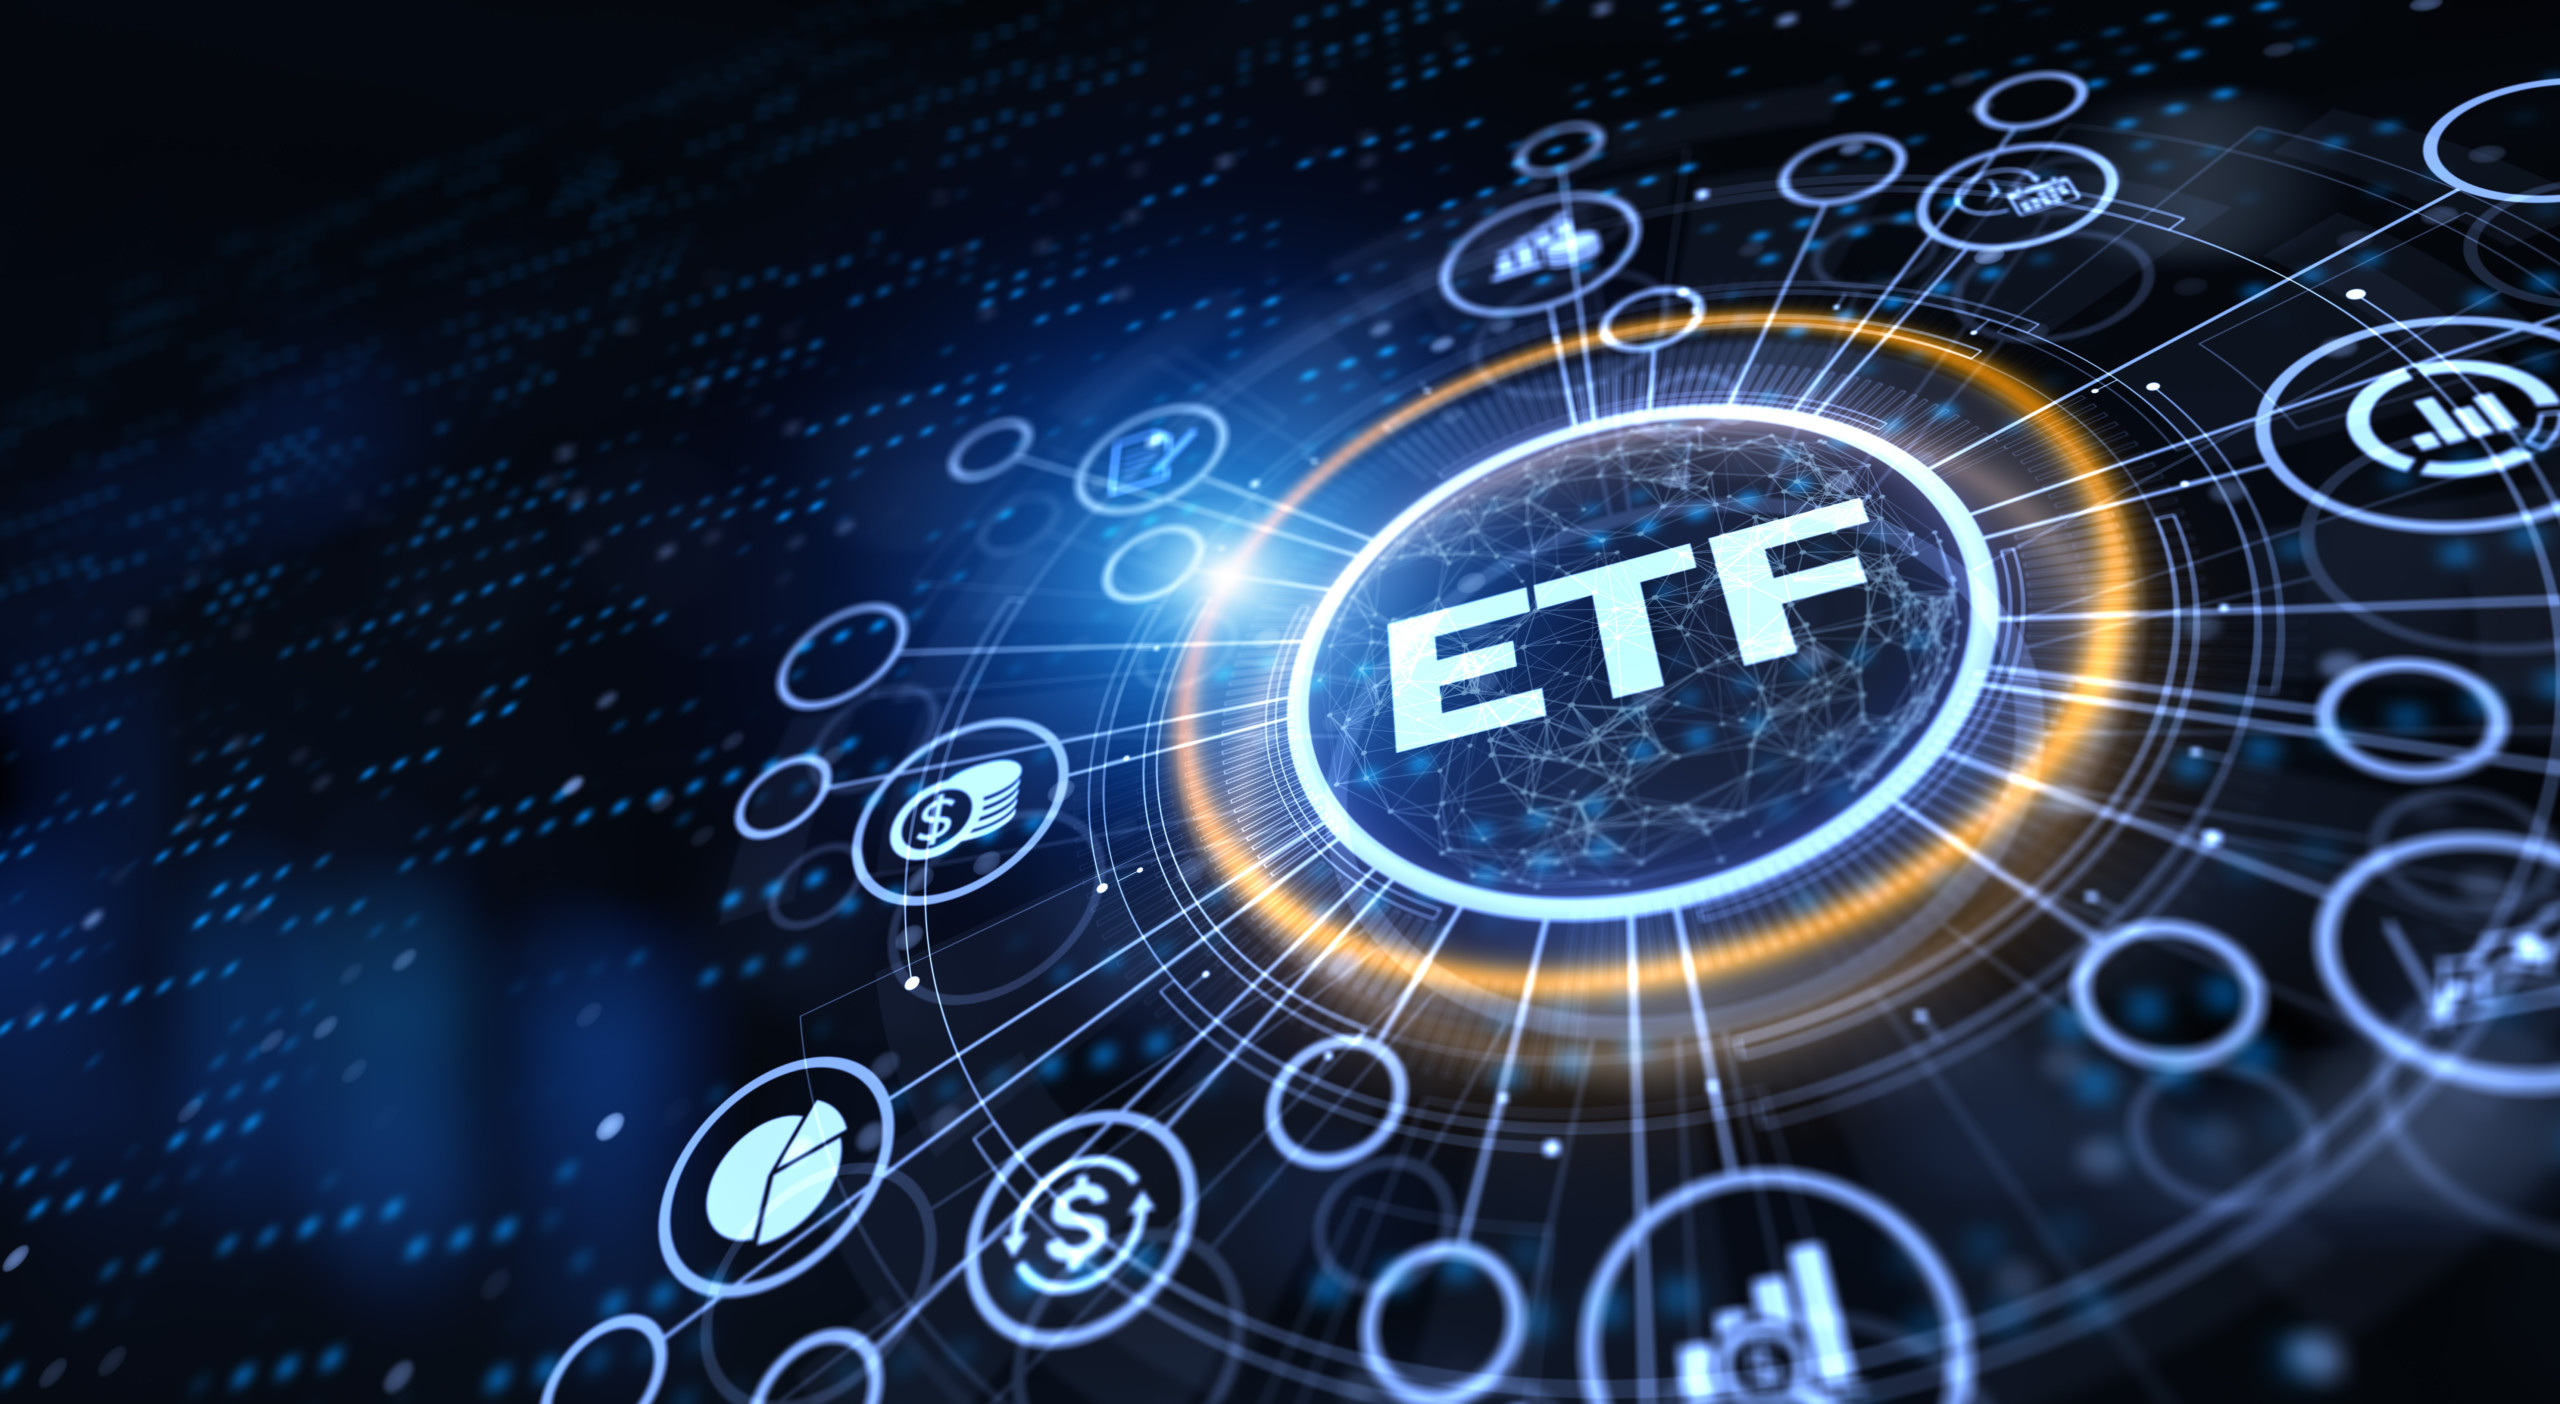 BlackRock – Aktie des Vermögensverwalters eine stelle interessante ETF-Alternative für Langfristinvestoren dar und dürfe im nächsten Aufschwung wieder durchstarten